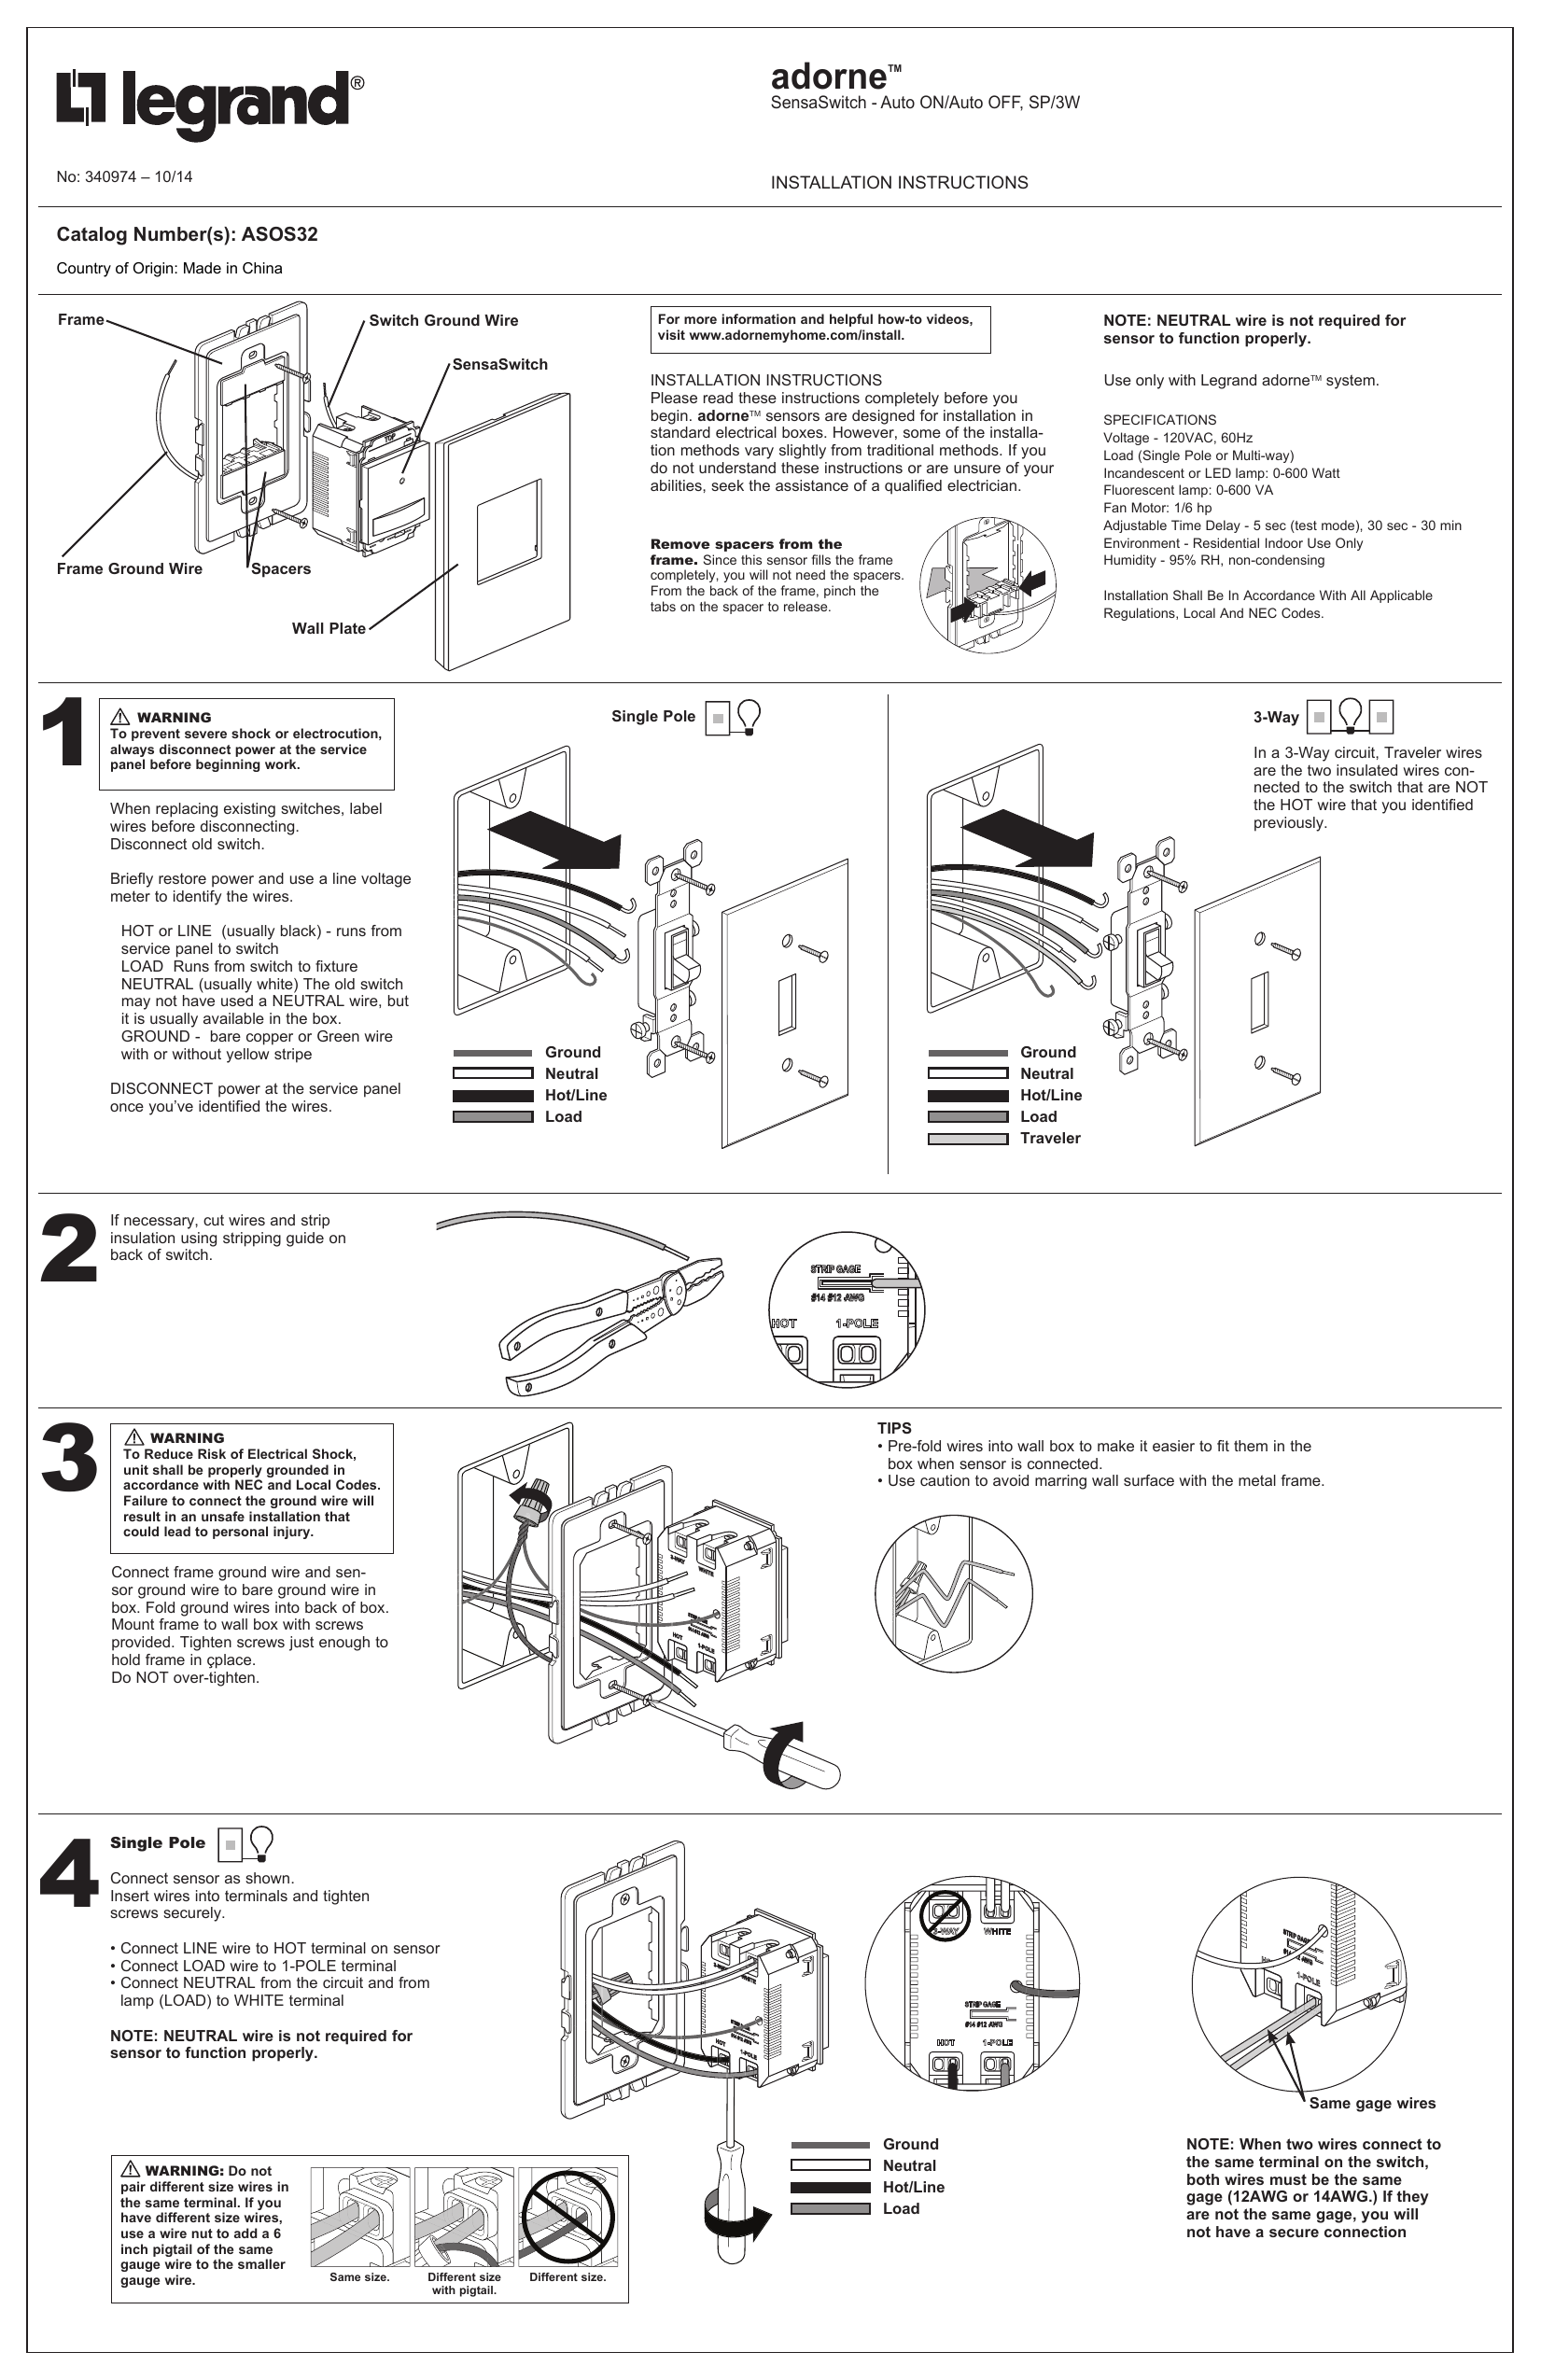 Legrand adorne Installation Instruction | Manualzz  Schematic Legrand 3 Way Switch Wiring Diagram    Manualzz